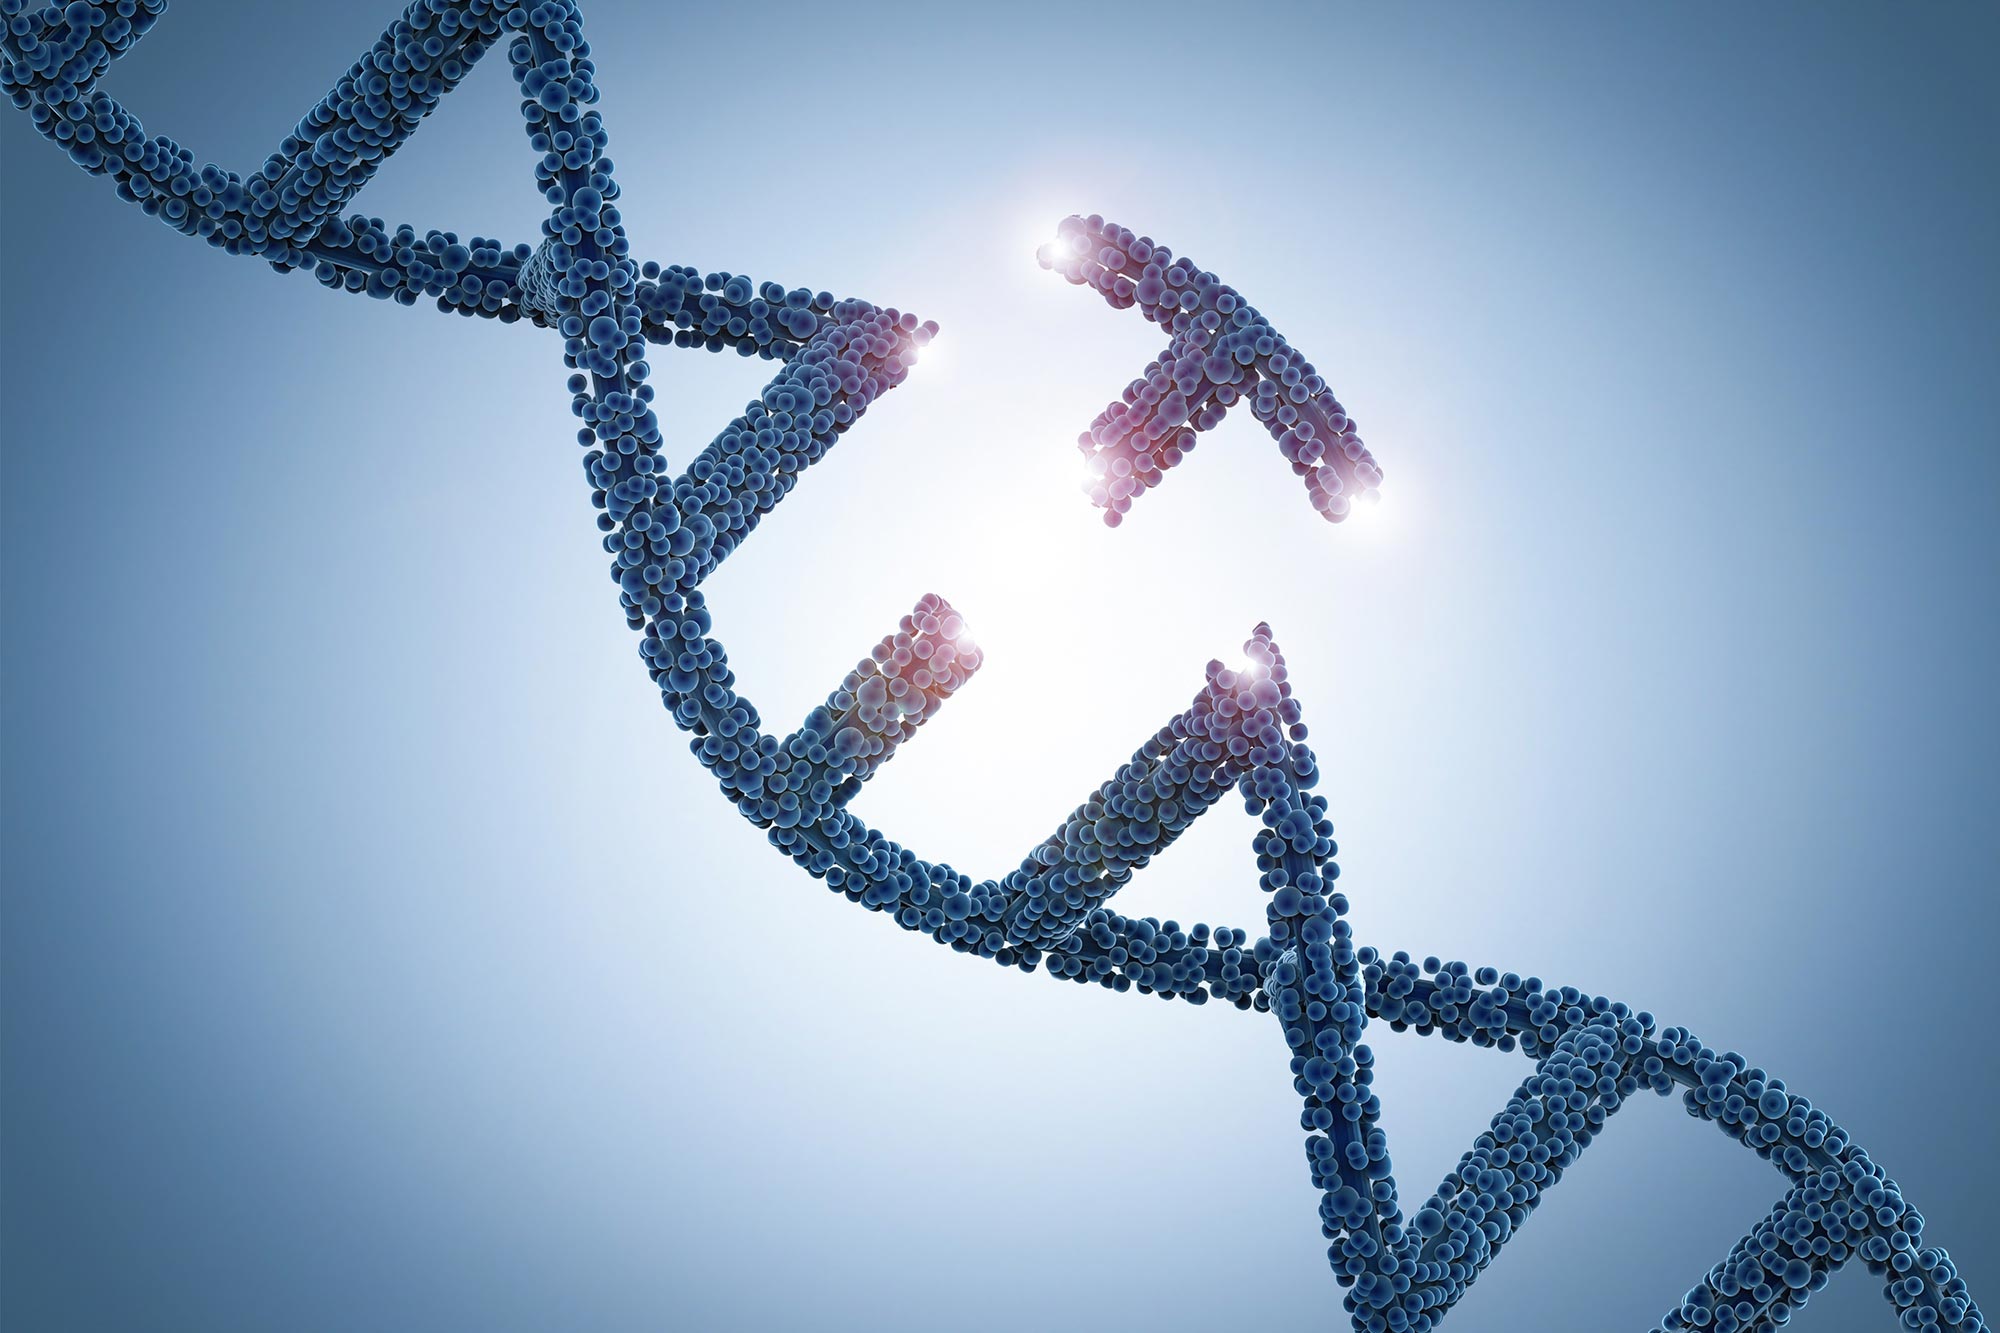 Dabar įmanomas visiškas genų įterpimas į žmogaus ląsteles